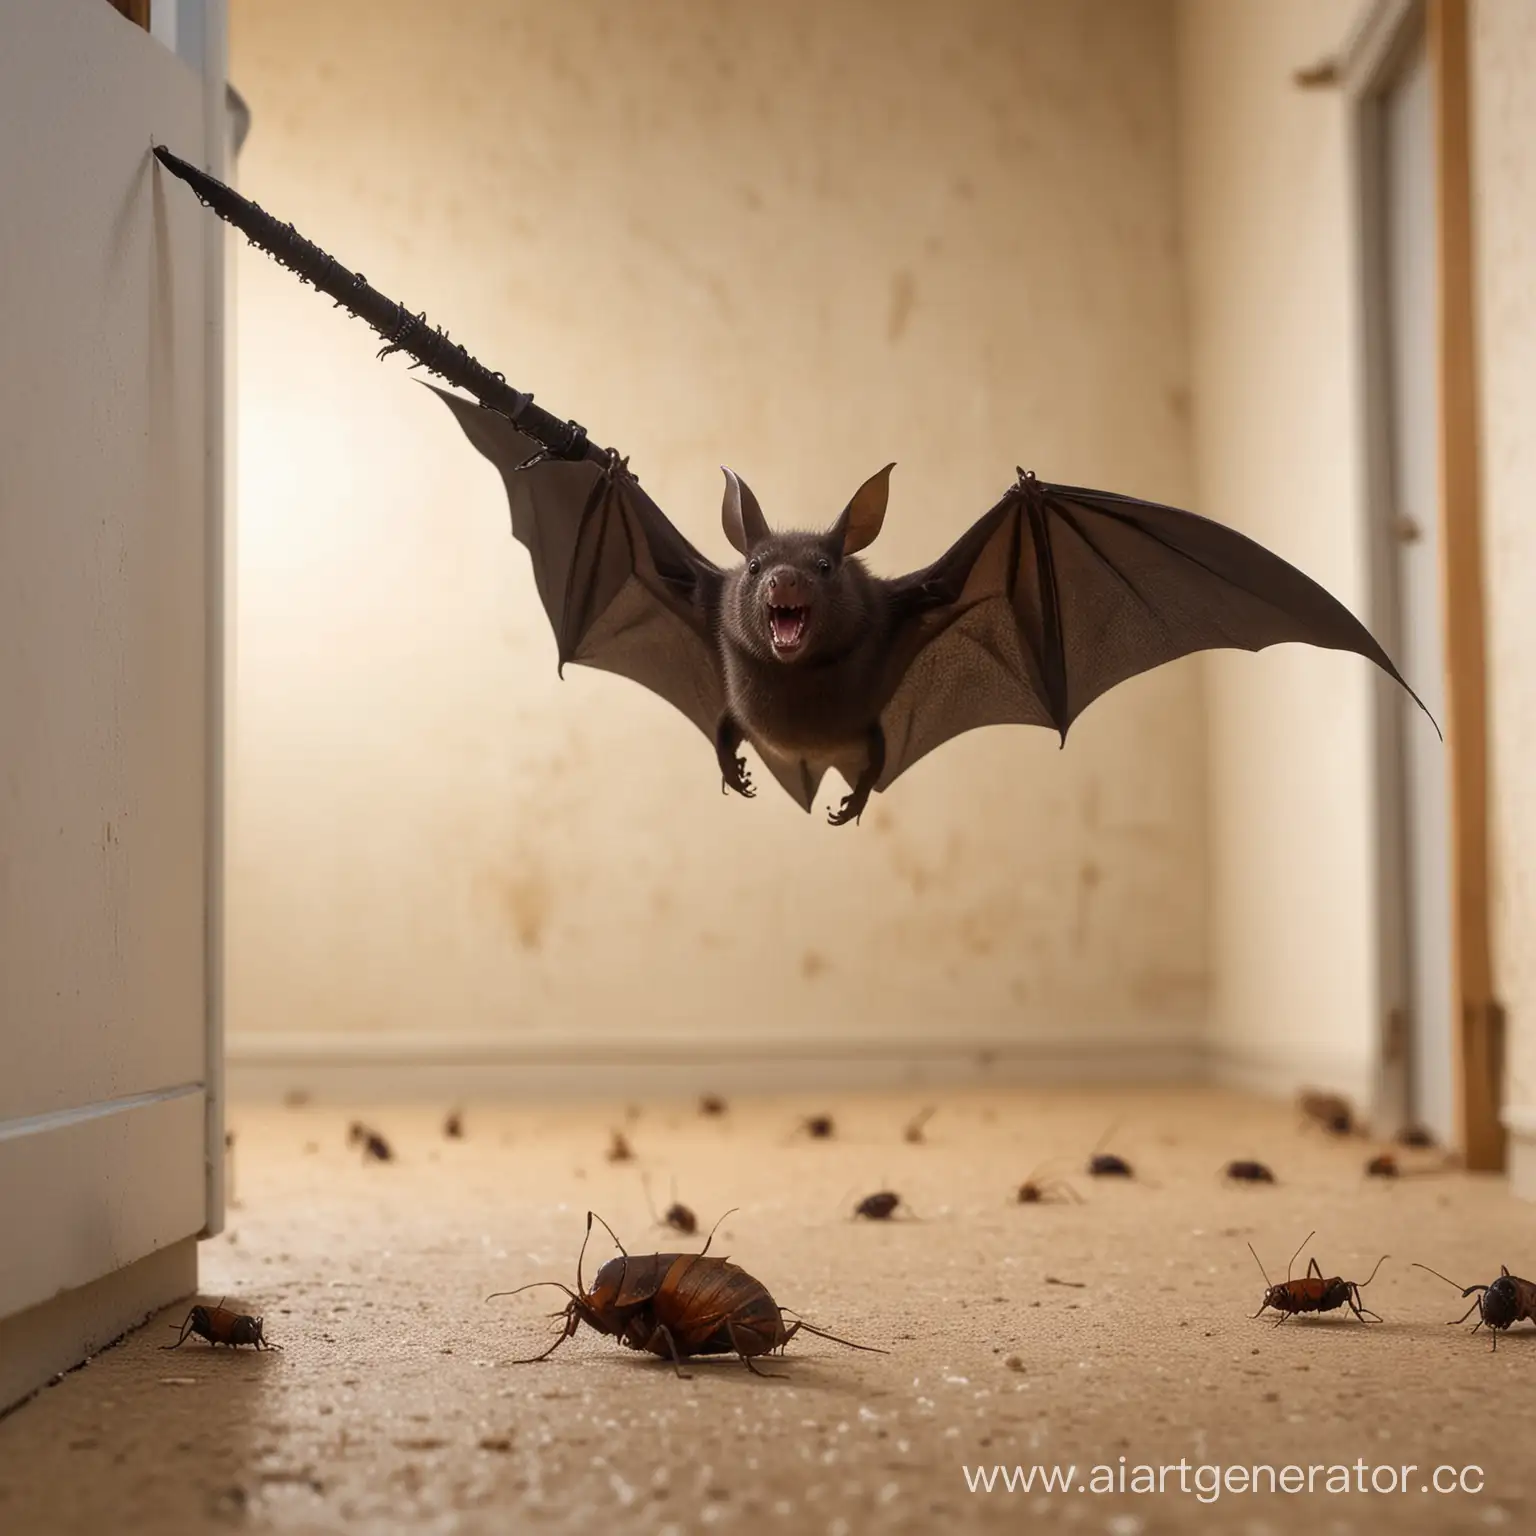 Летучая мышь с мечом дерется с тараканами в общаге